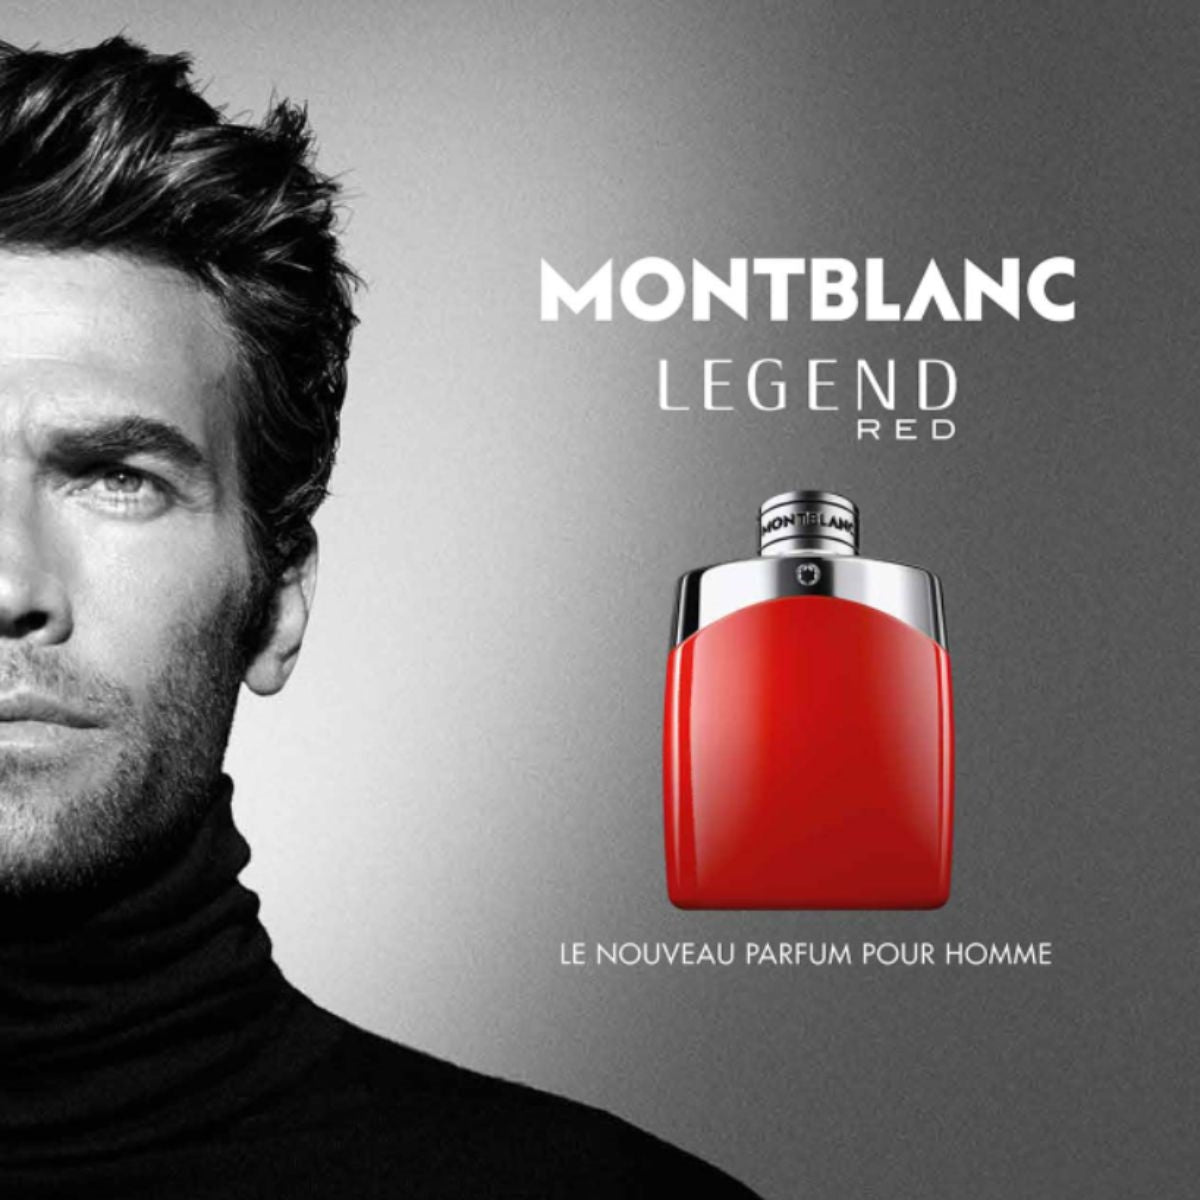 Parfums Legend Red de la marque Montblanc pour homme 100 ml